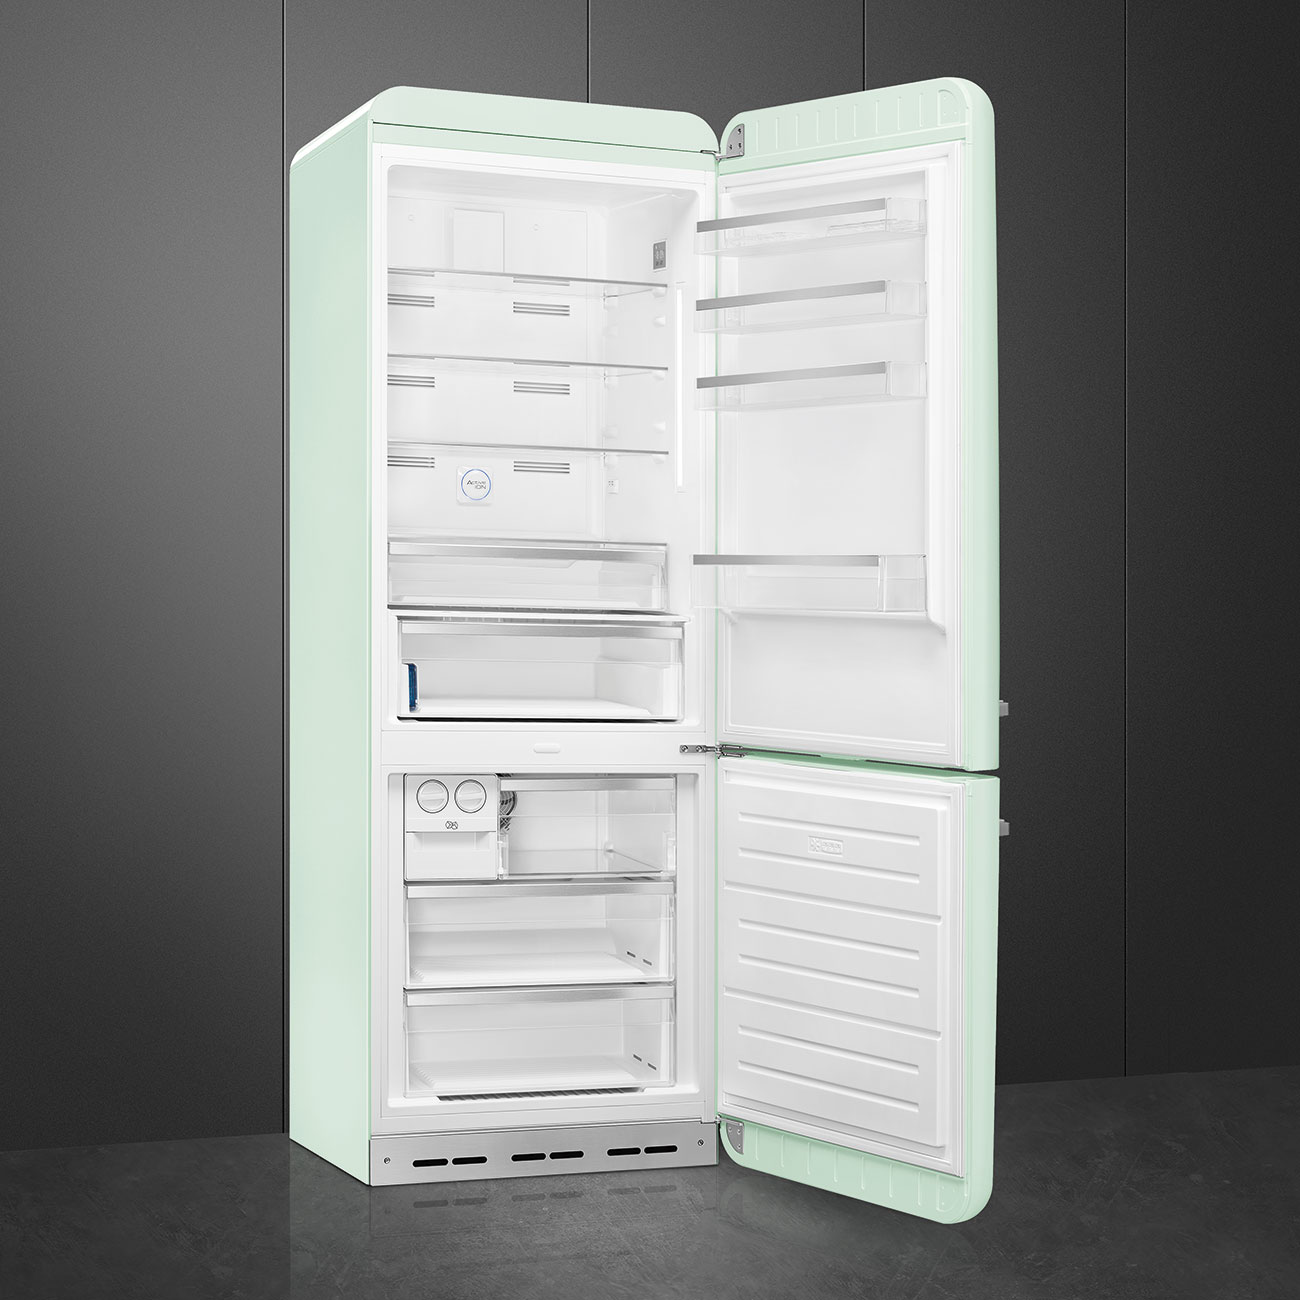 Watergroen koelkast - Smeg_5